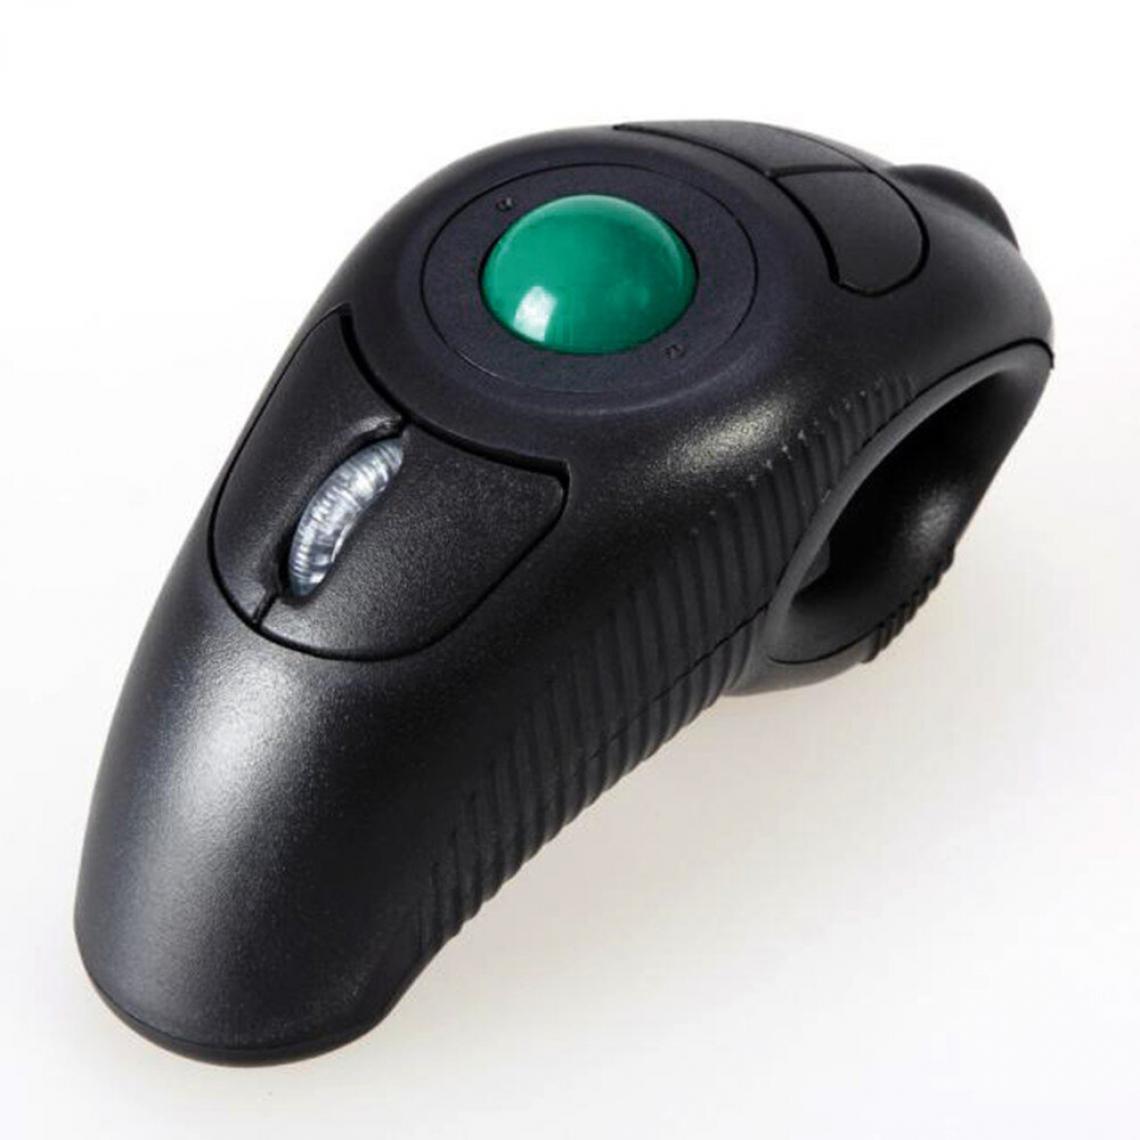 Universal - 2.4g air sans fil souris trackball portable port USB contrôle du pouce souris trackball portable distance de réception 15 mètres noir(Le noir) - Souris